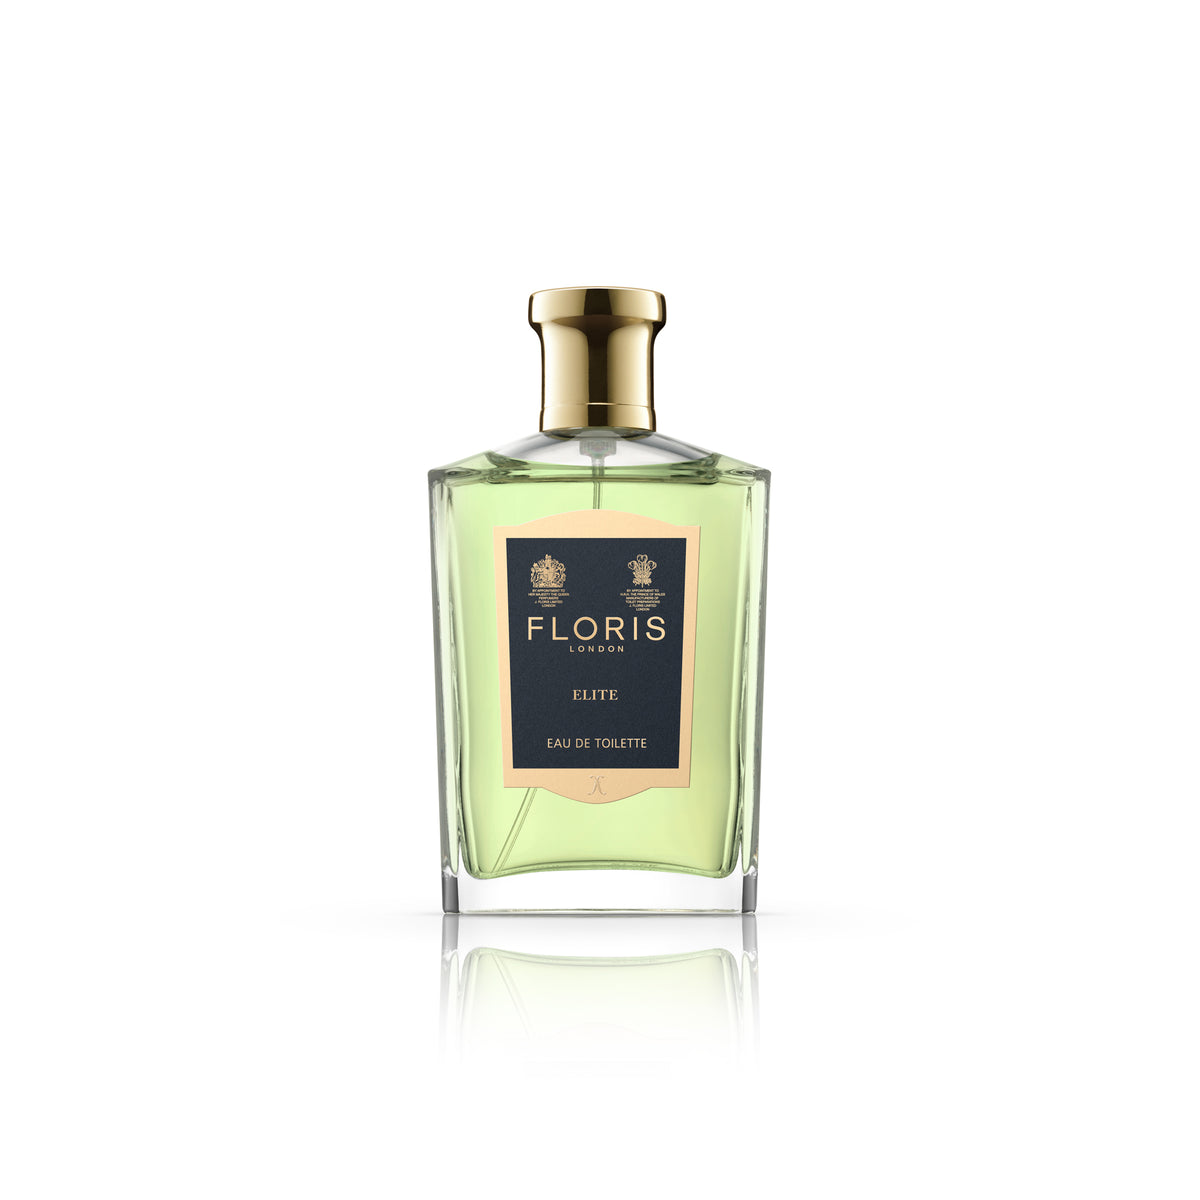 A bottle of FLORIS Elite 100 ML Eau de Toilette fragrance on a white background.